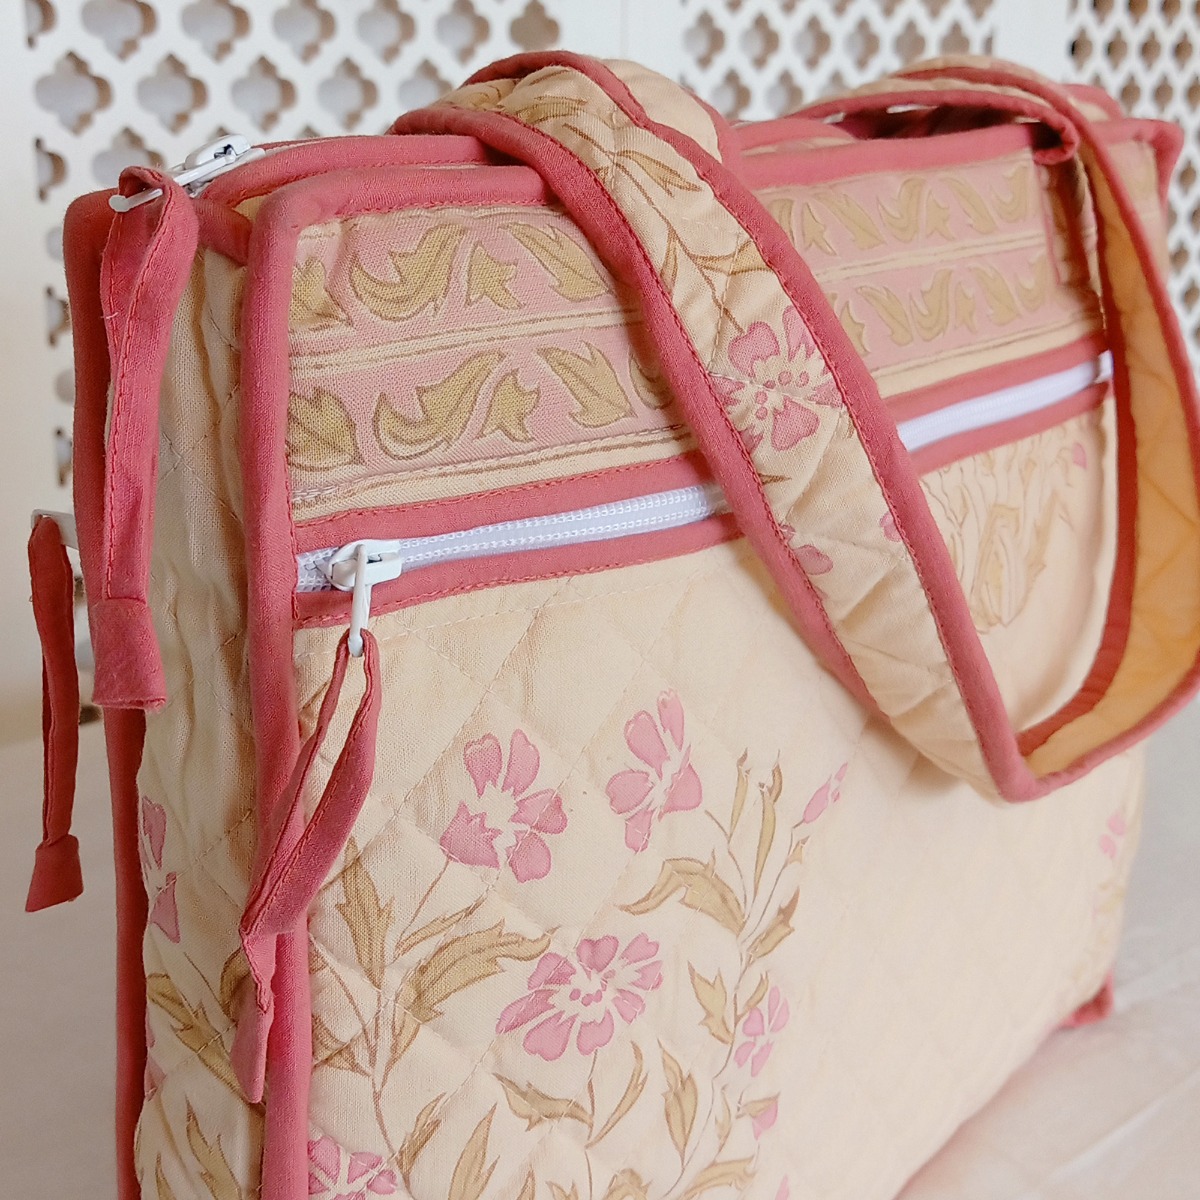 Find the Best Block Printed Handbags Online